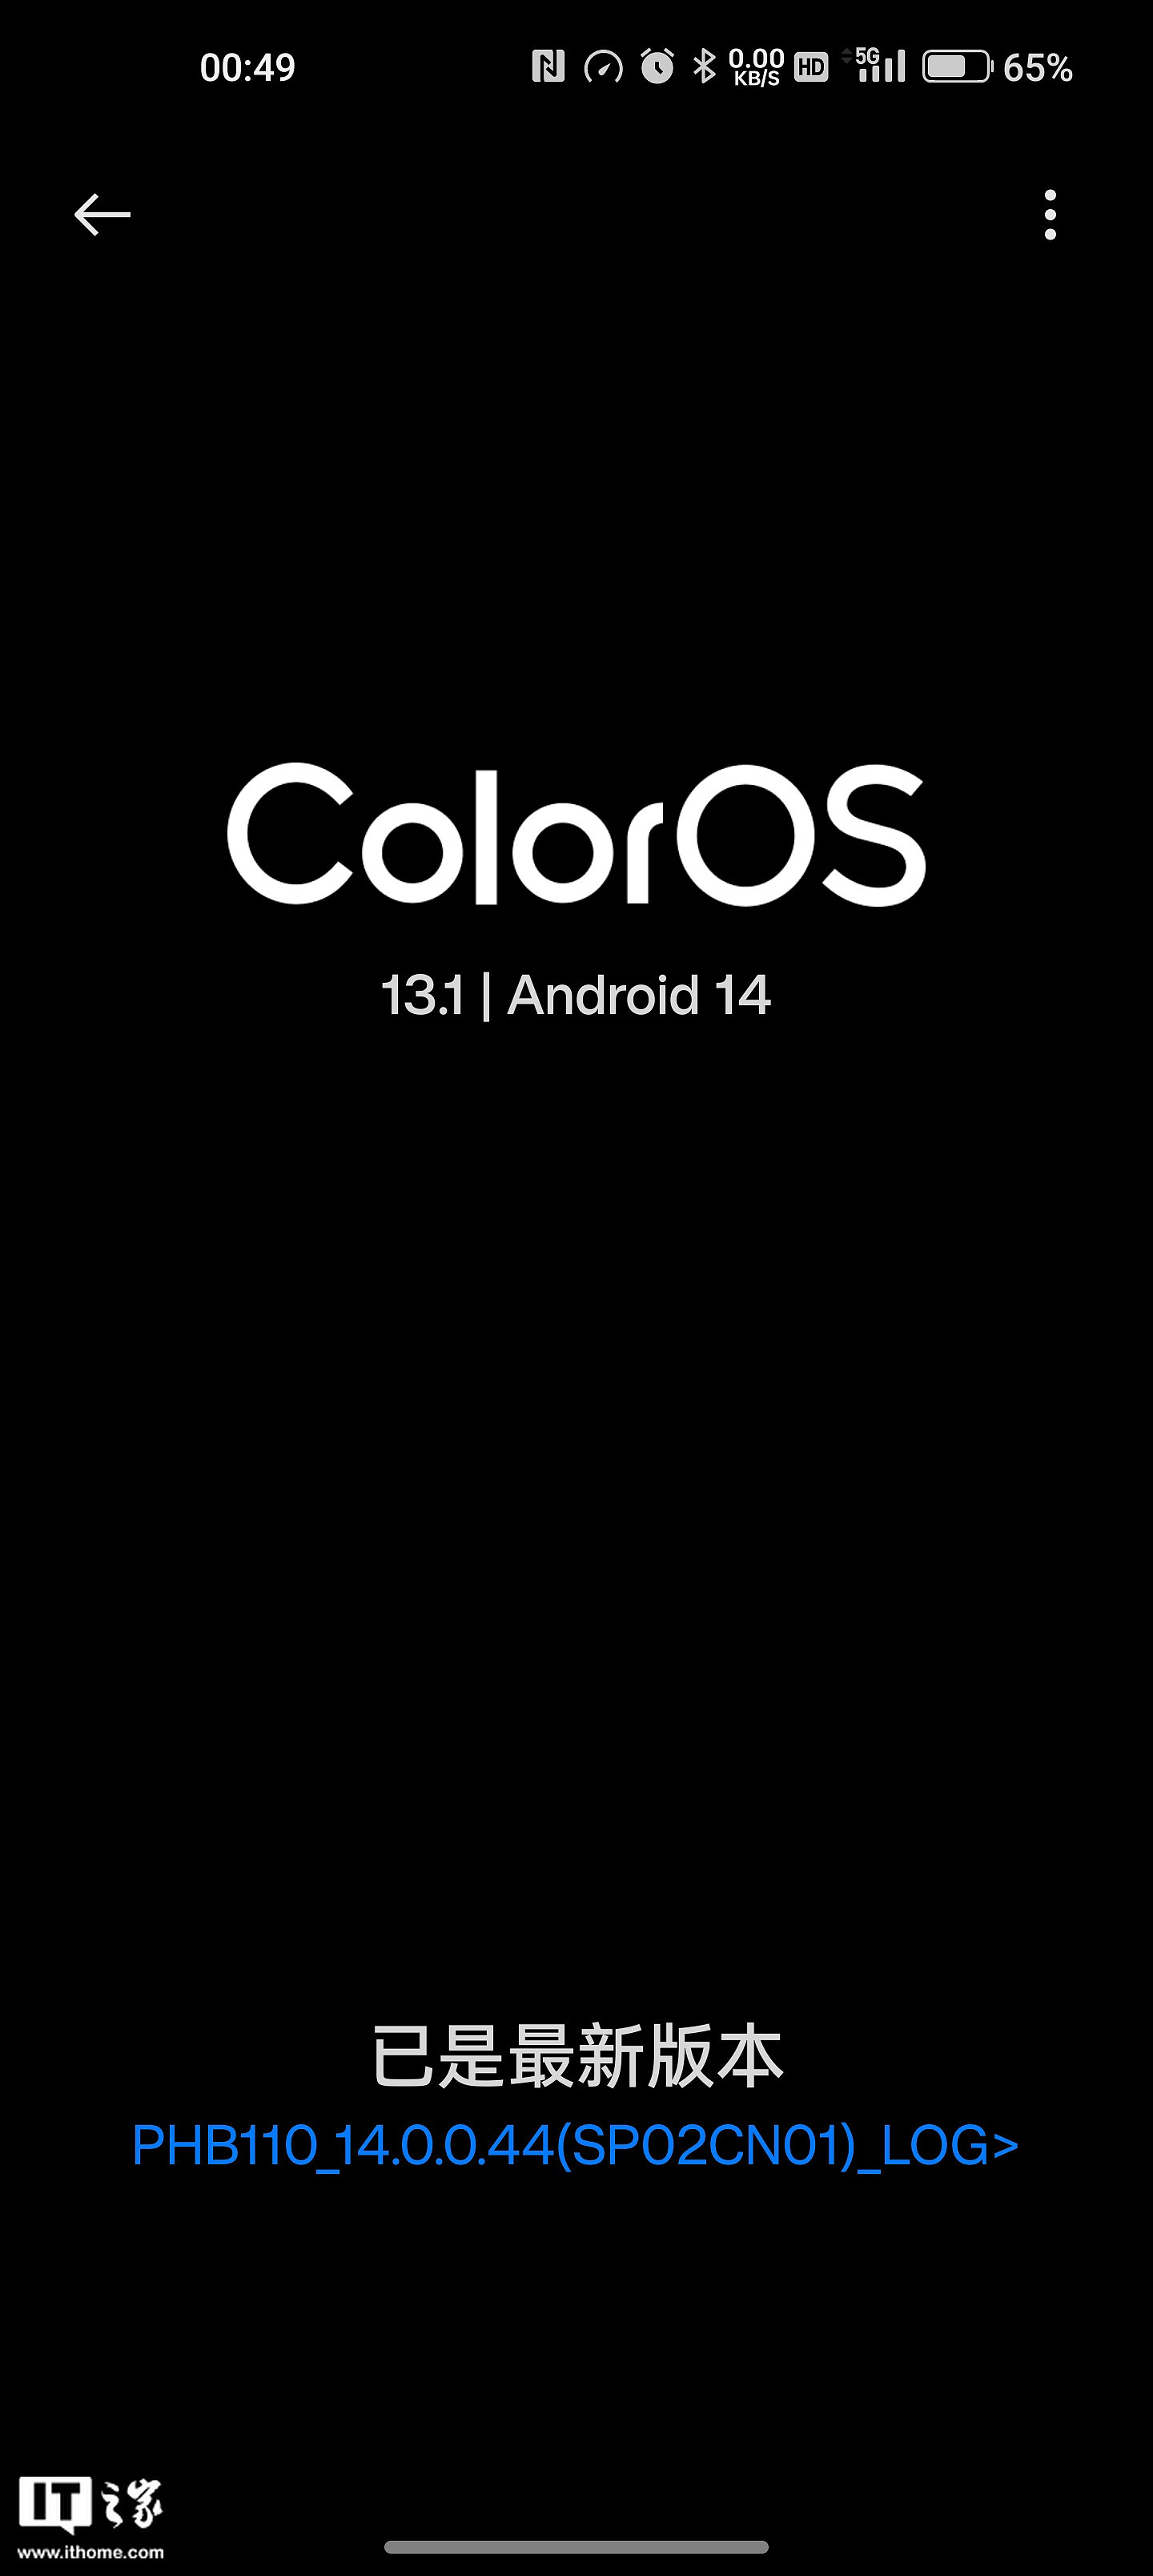 一加 11 手机推送 ColorOS 13.1 系统更新：修复多个系统 bug，优化网络连接 - 1